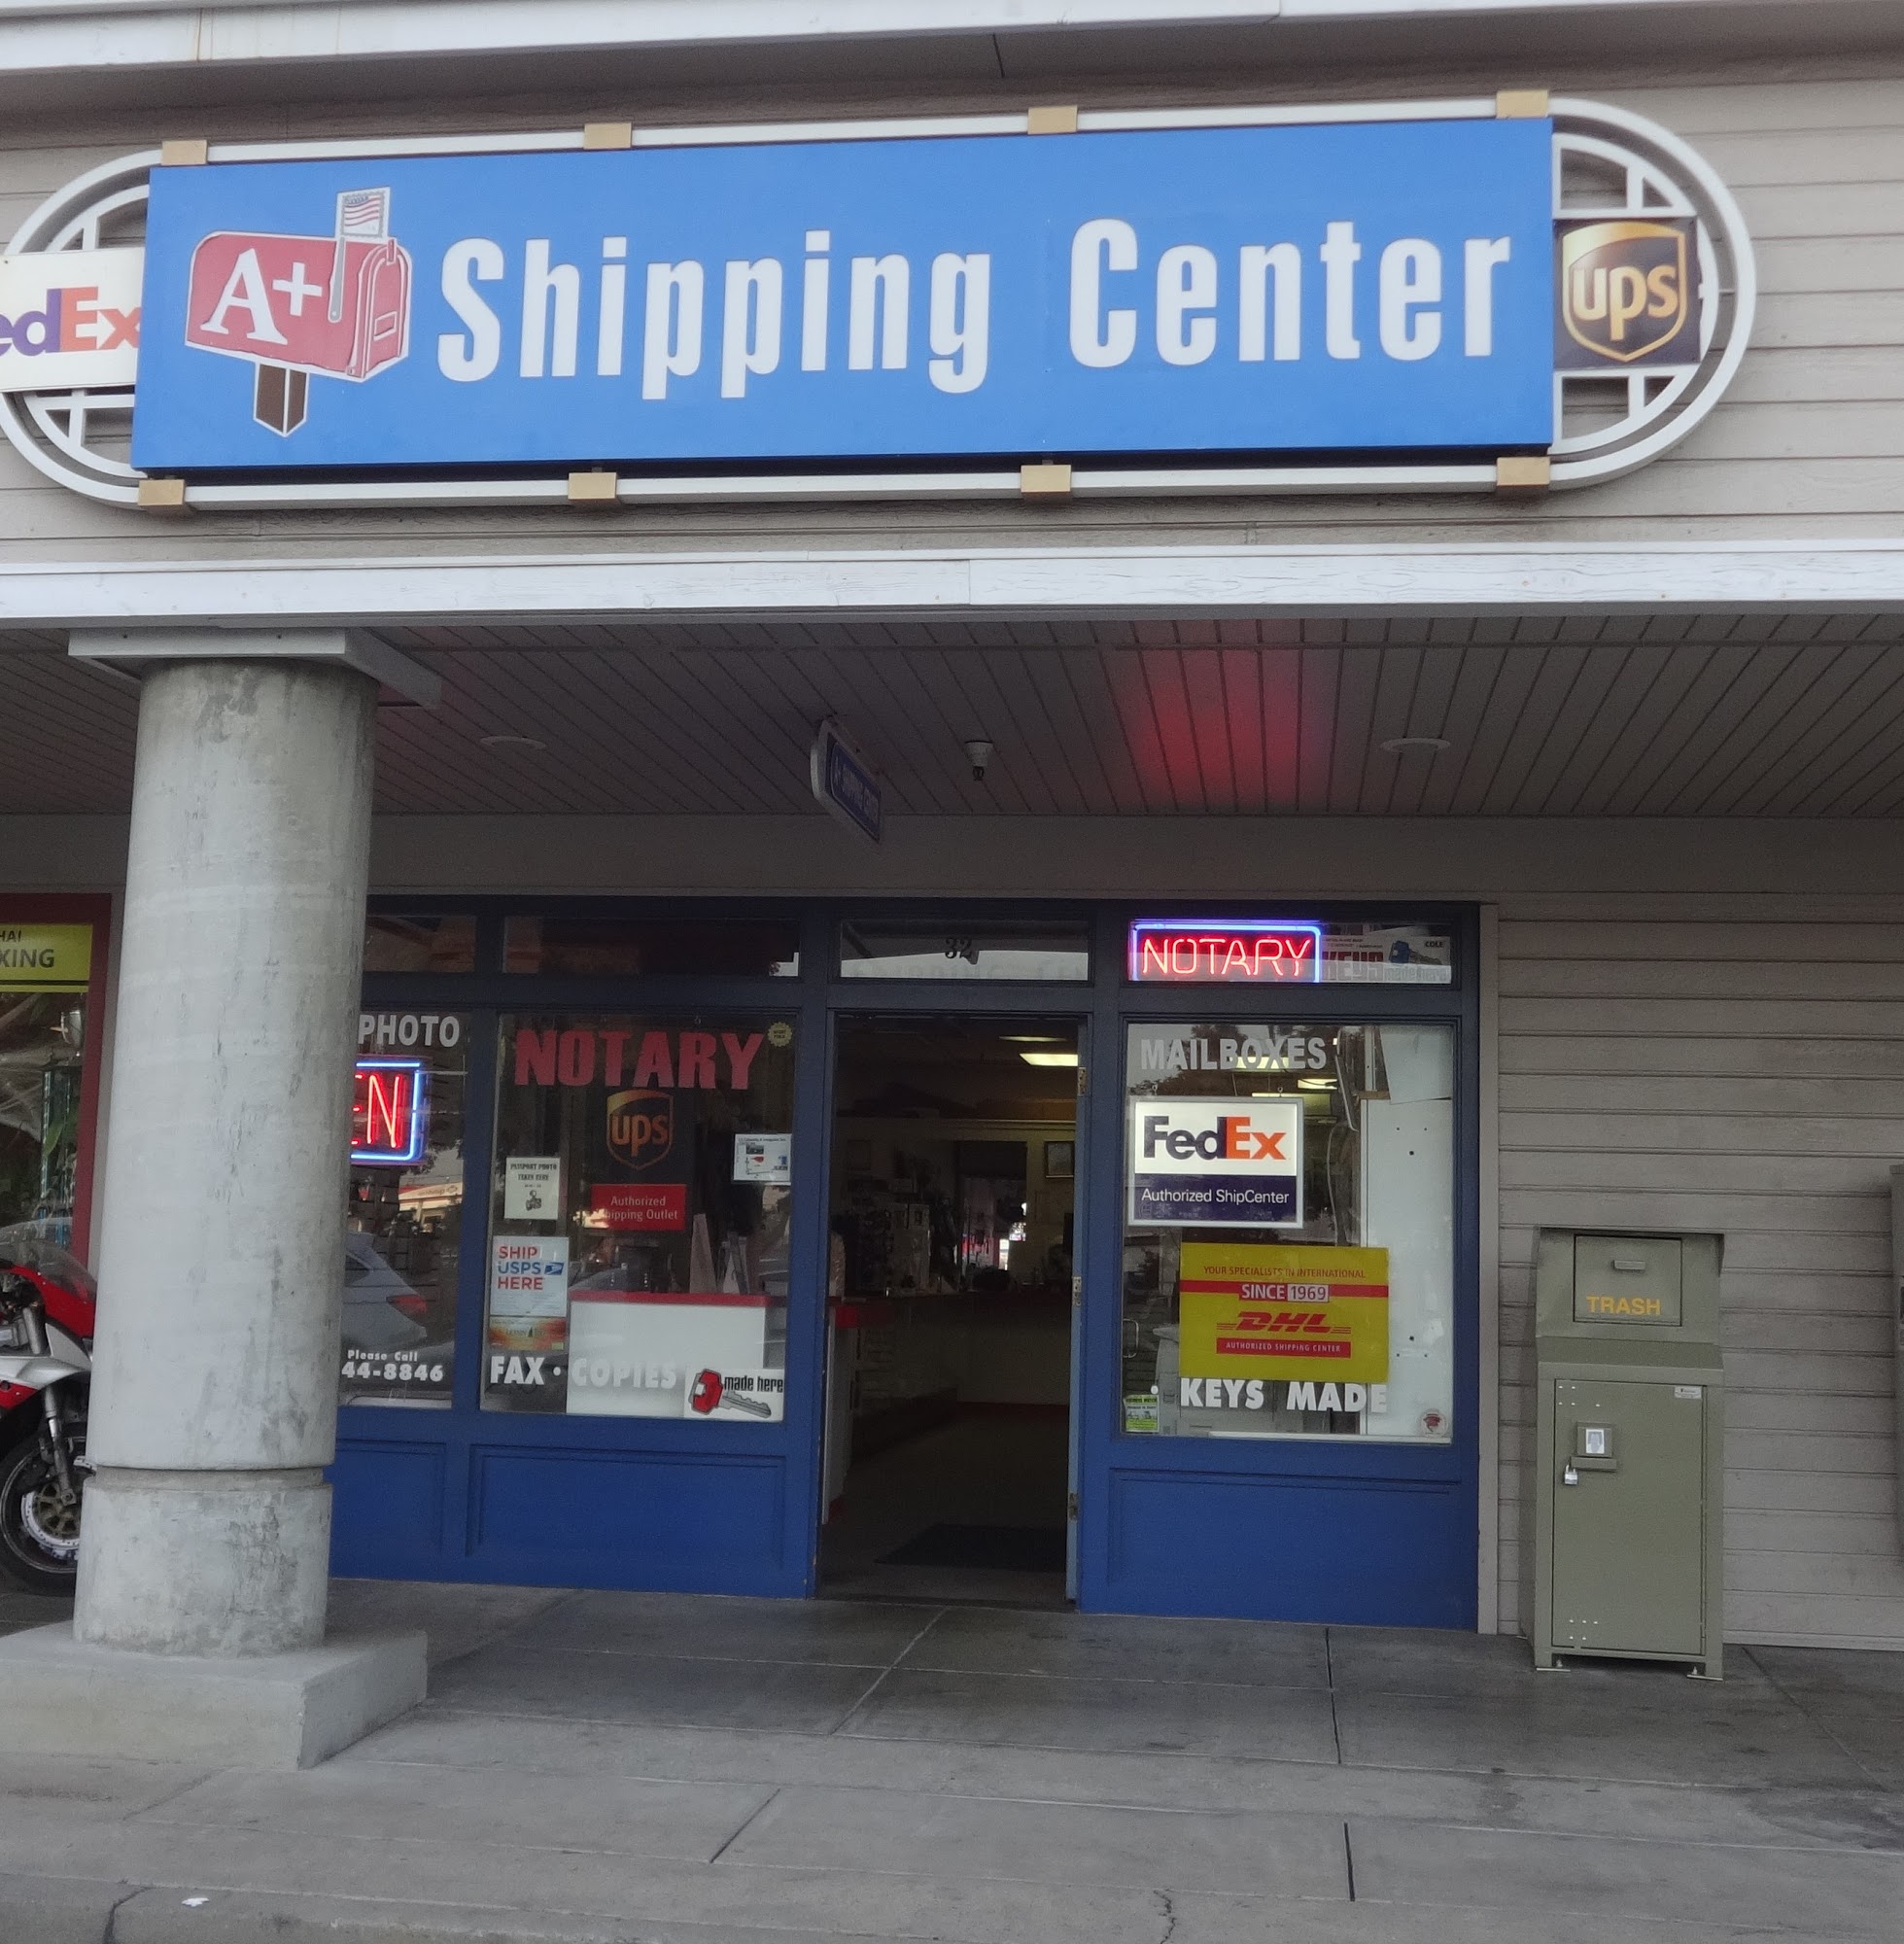 A+ Shipping Center